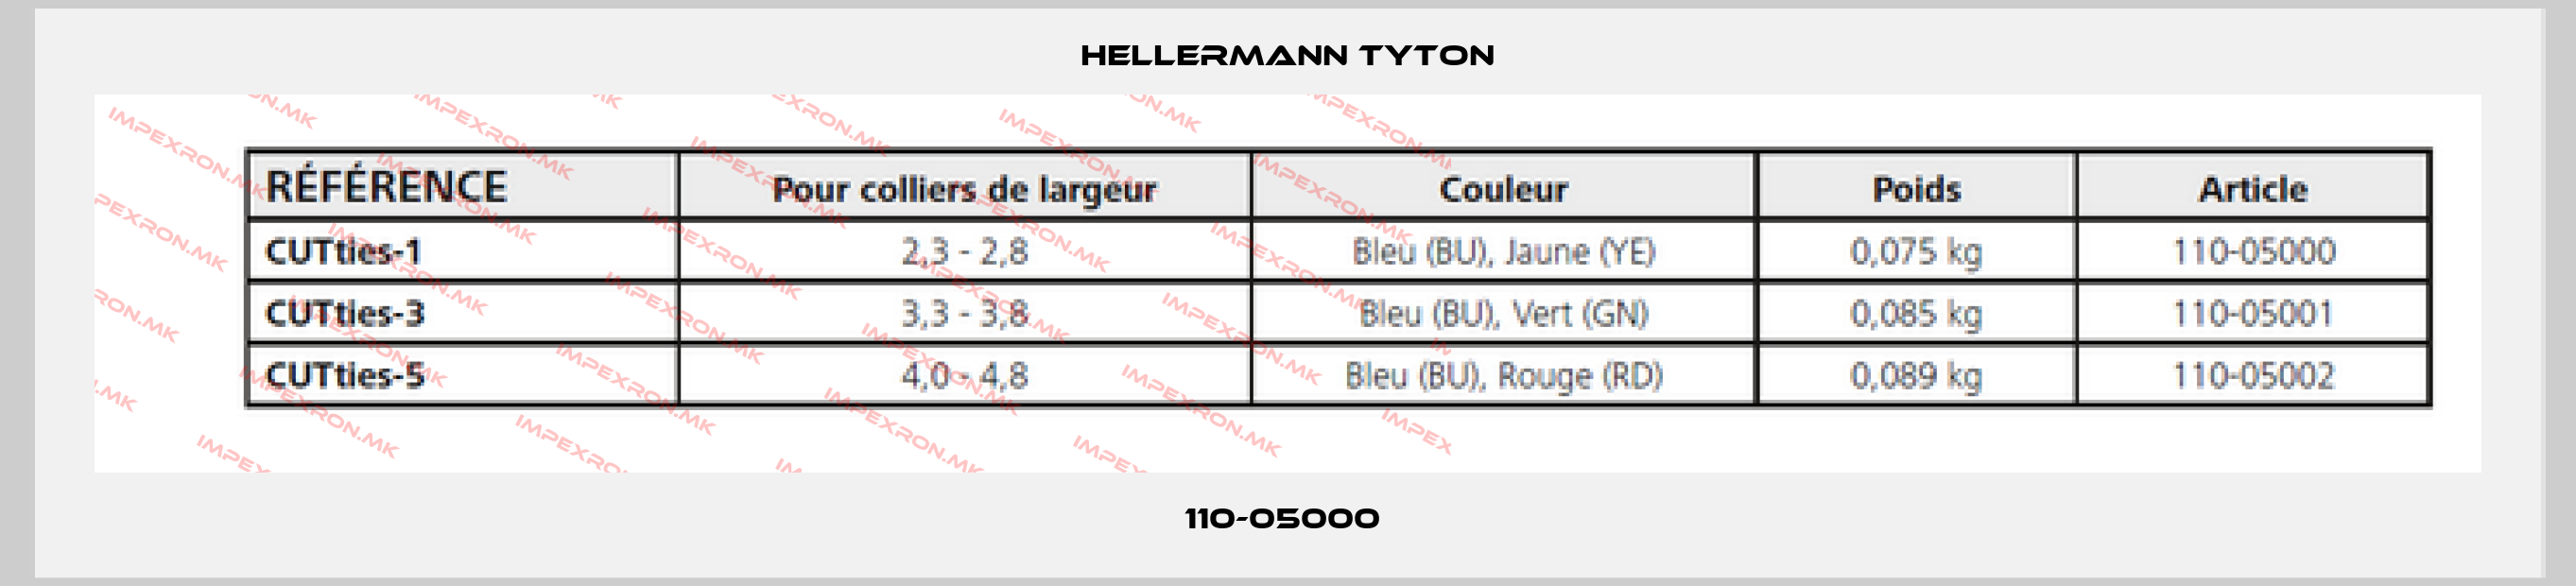 Hellermann Tyton-110-05000 price